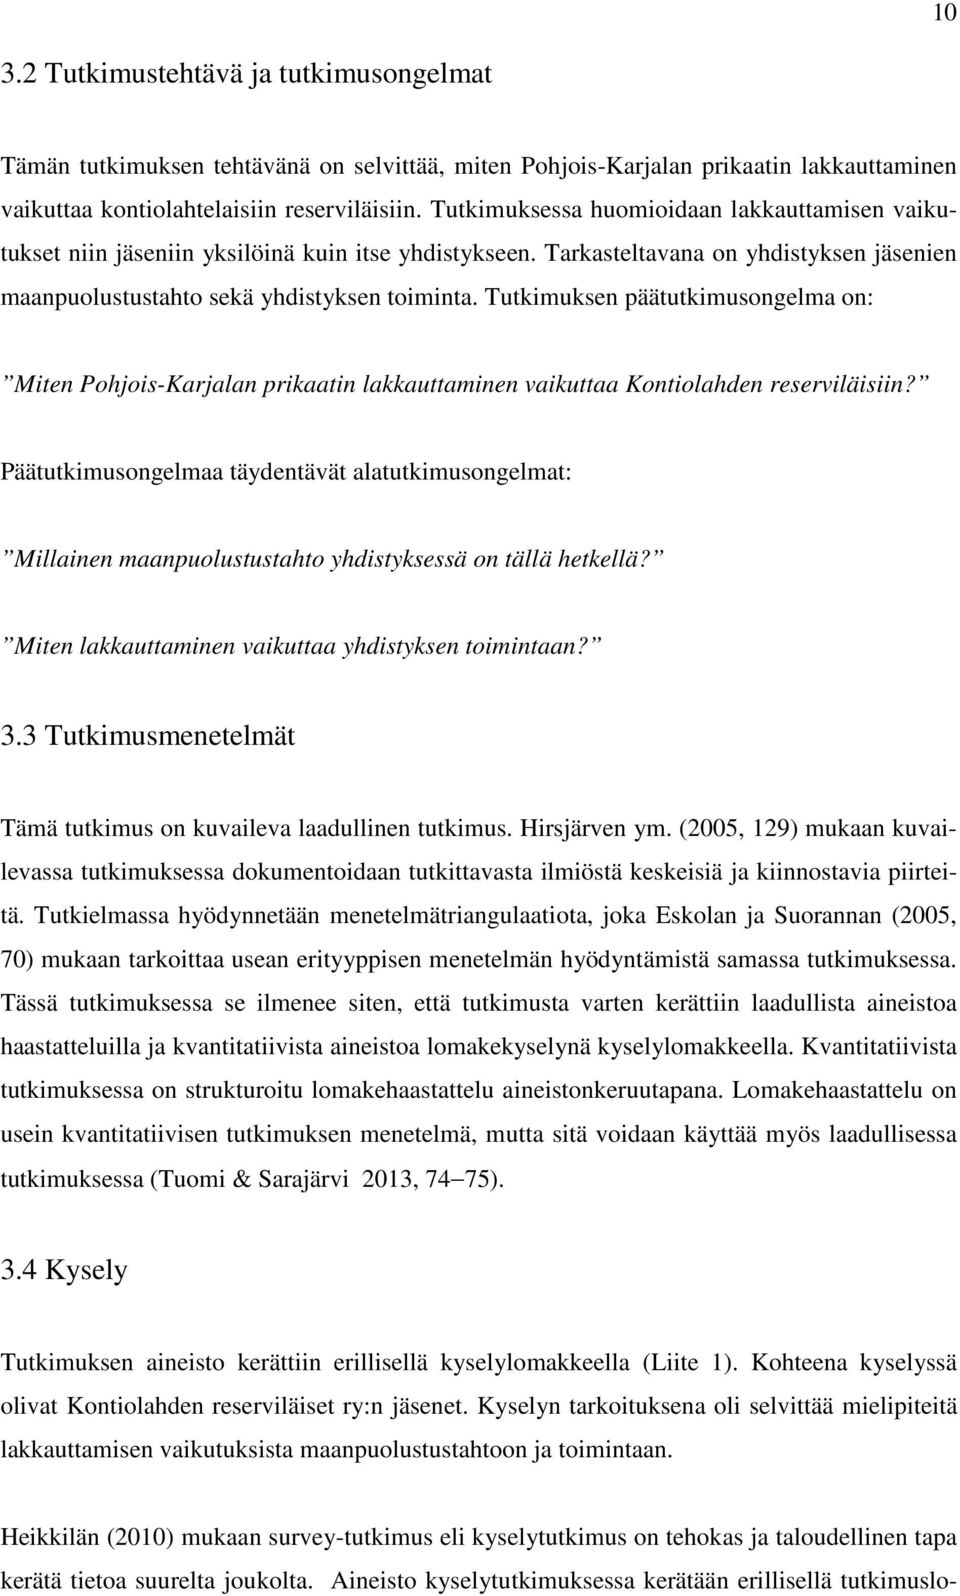 Tutkimuksen päätutkimusongelma on: Miten Pohjois-Karjalan prikaatin lakkauttaminen vaikuttaa Kontiolahden reserviläisiin?